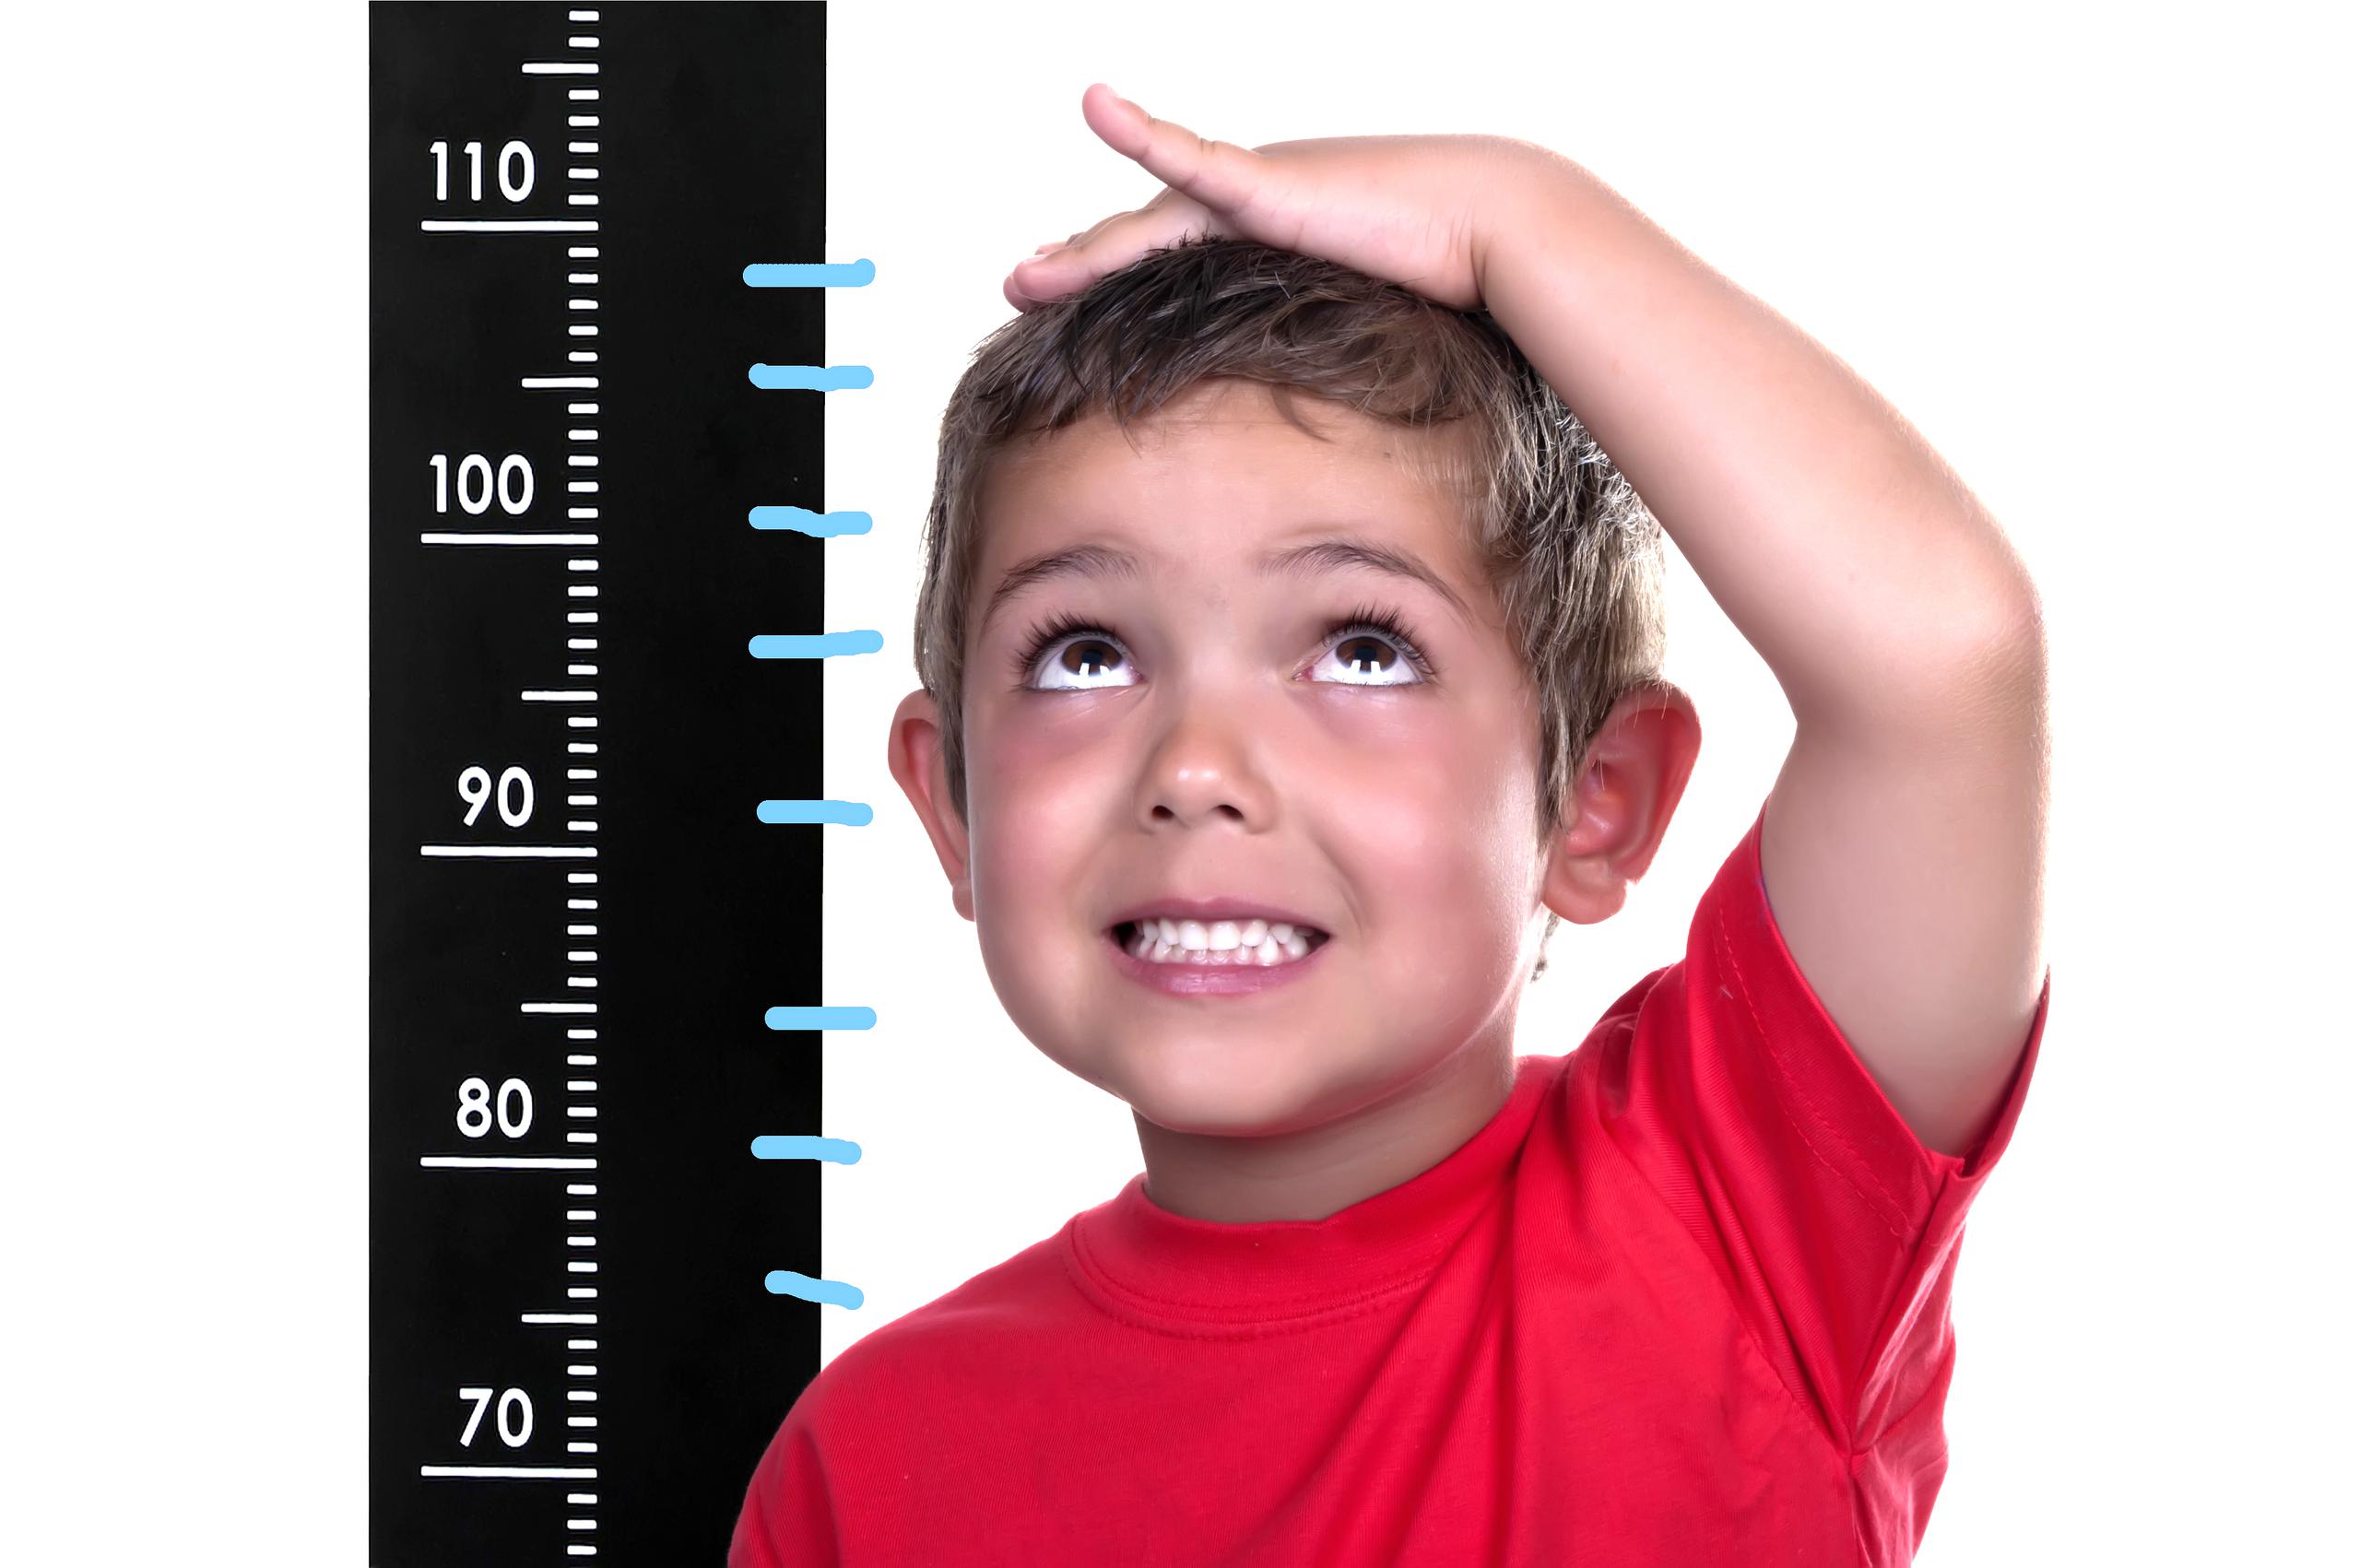 Entre las causas de la talla baja pueden estar los hábitos del niño, pero también existen otros factores que pueden determinar este padecimiento.